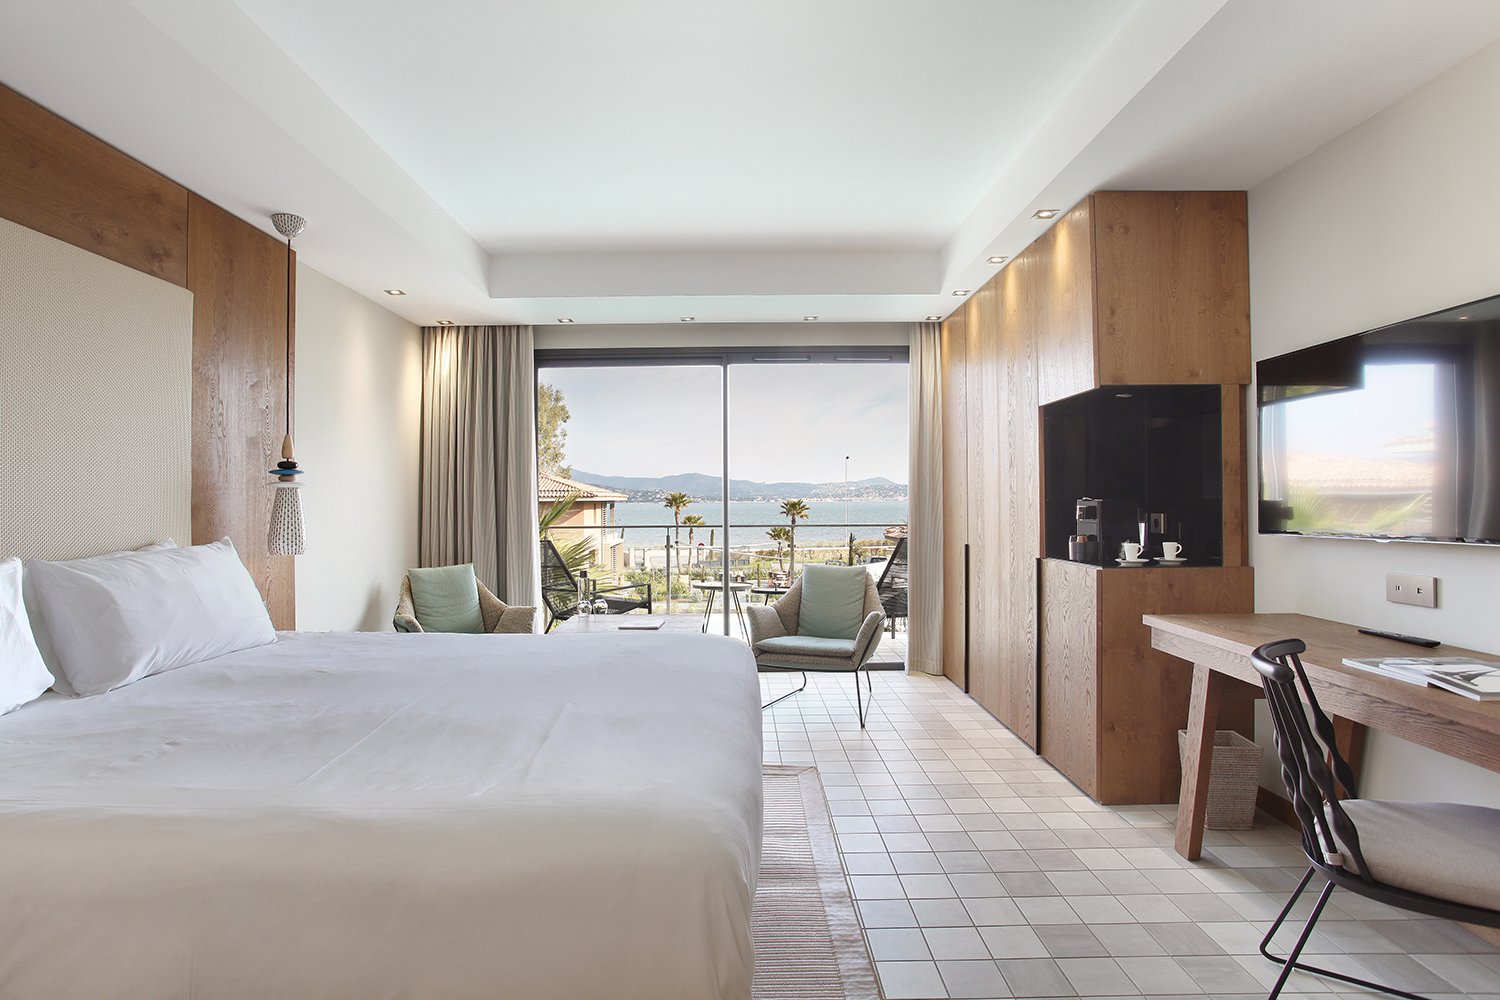 Chambre Villa WOOD - Kube Hotel Saint-Tropez - Côte d'Azur